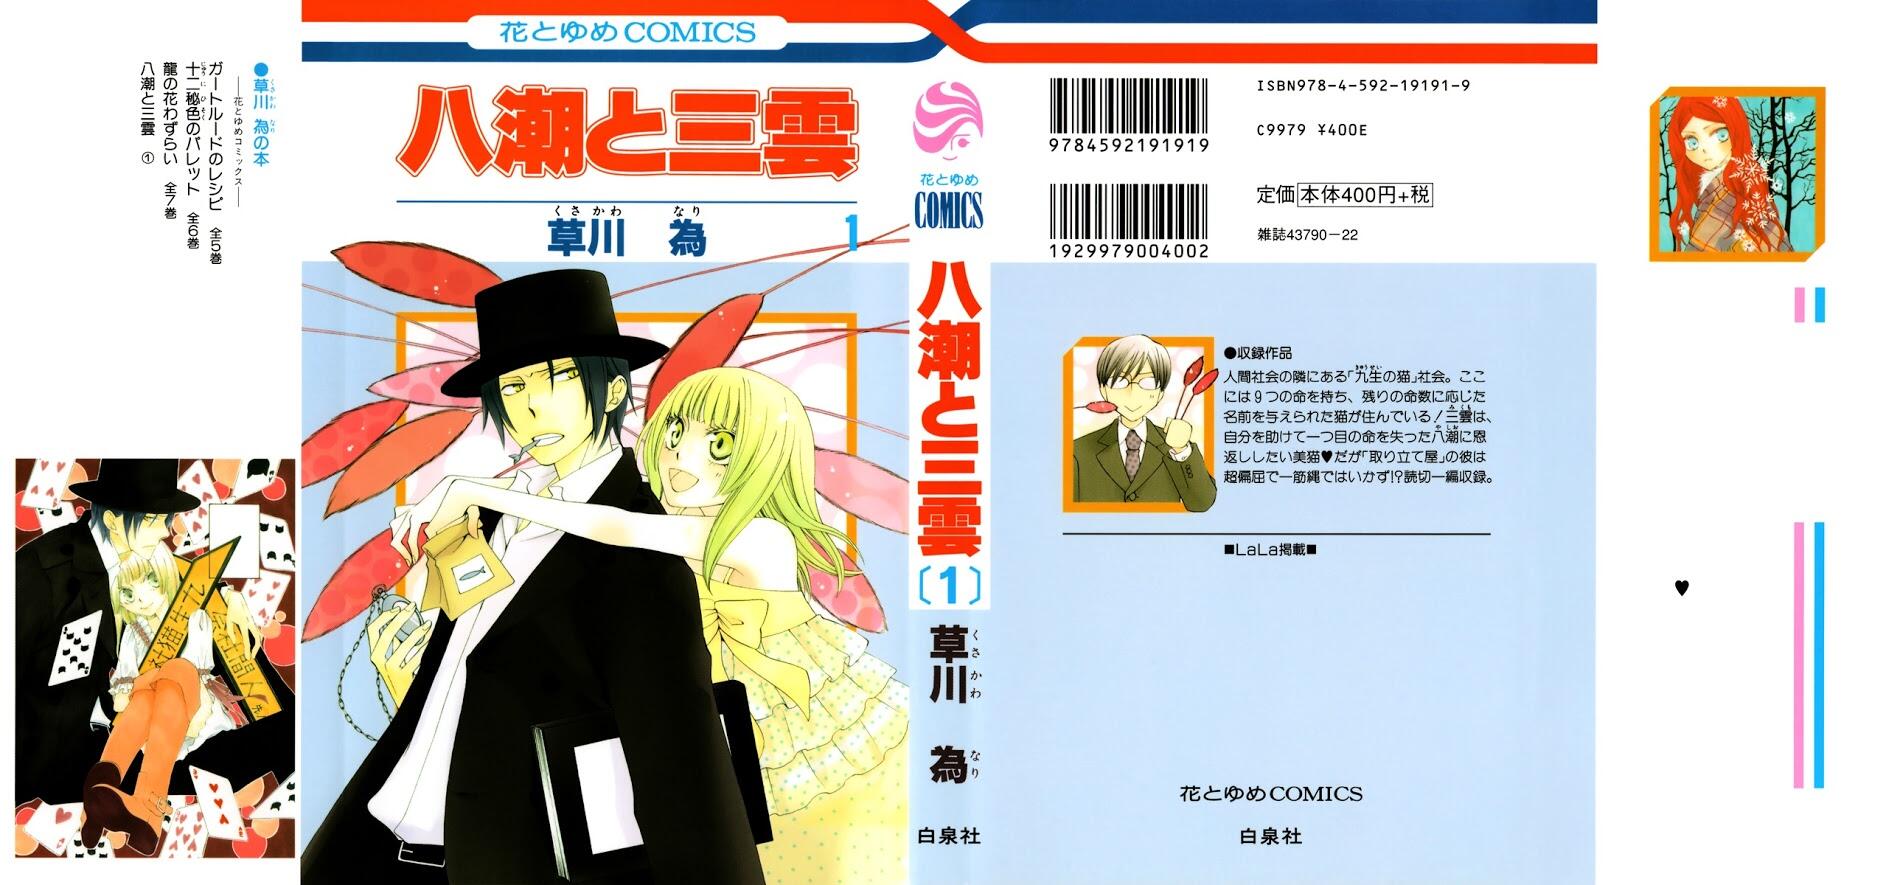 Read Yashio To Mikumo Vol 1 Chapter 1 On Mangakakalot